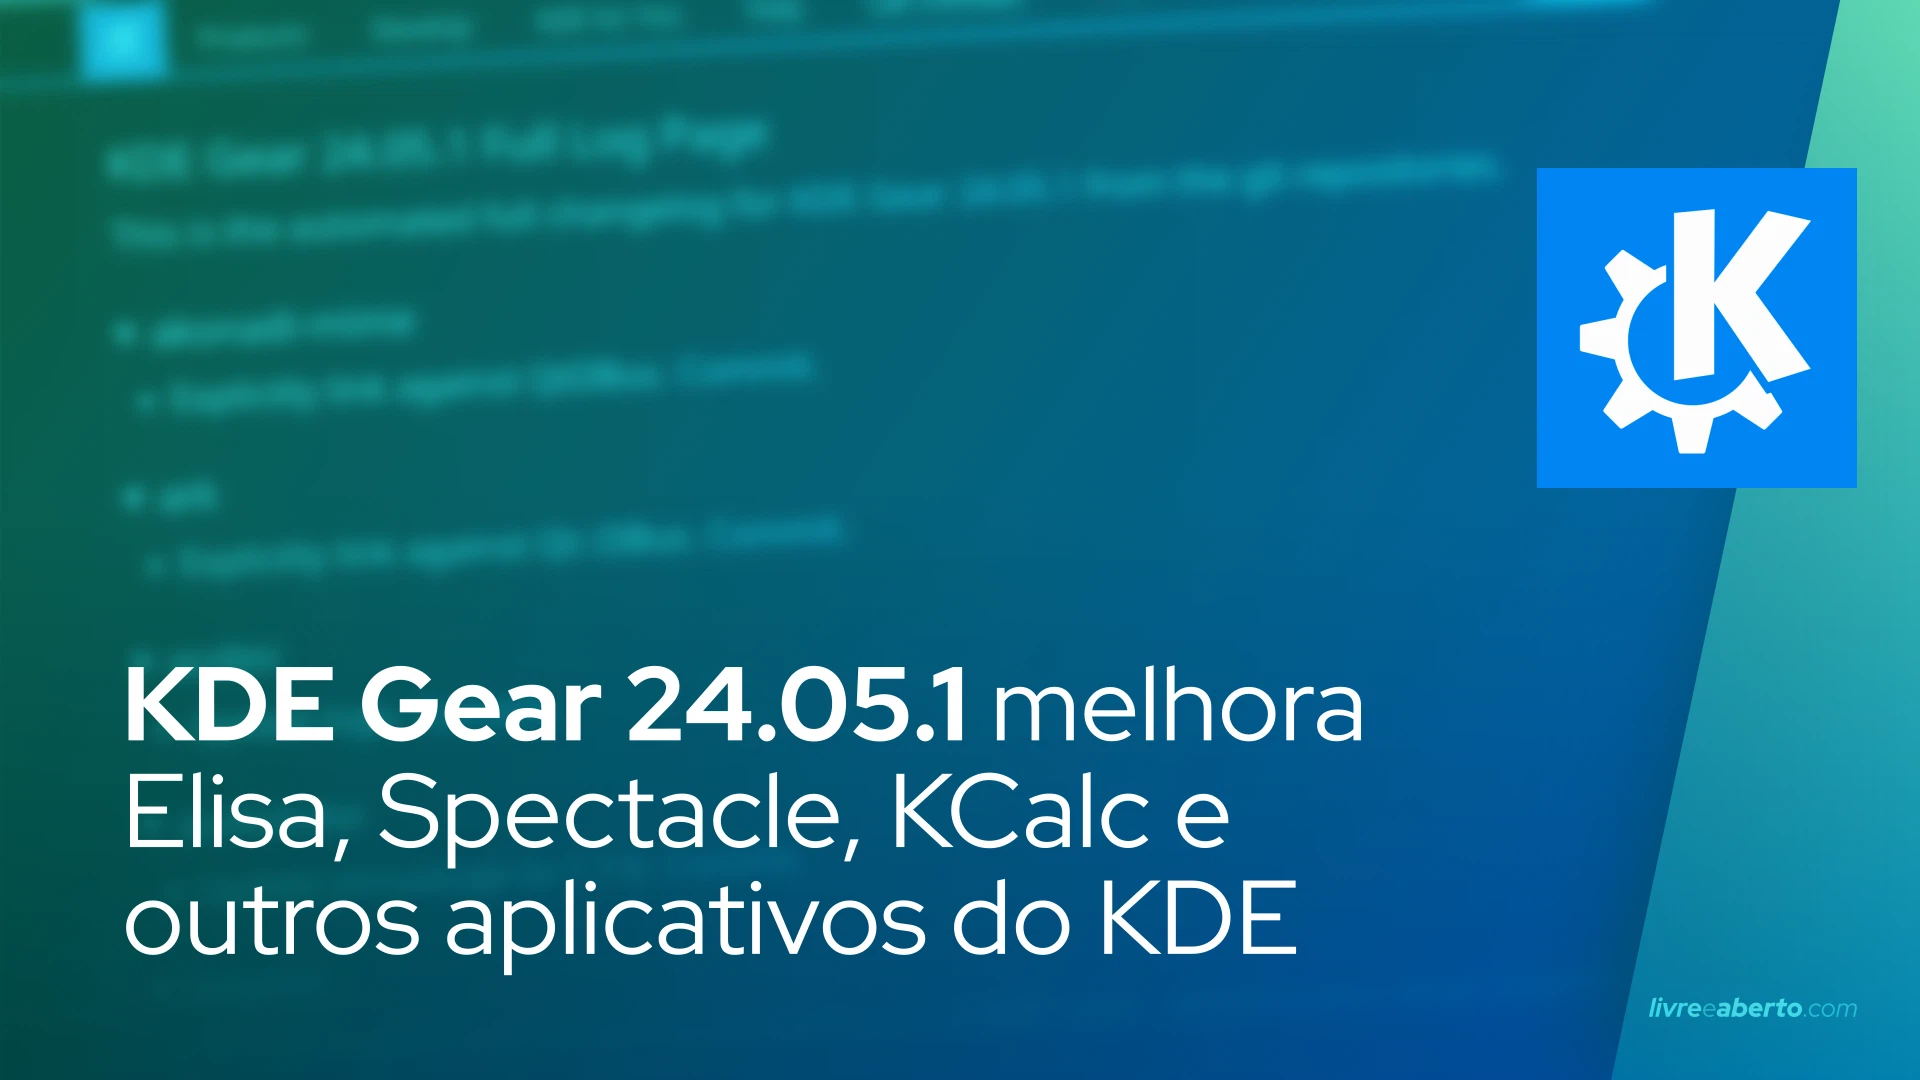 KDE Gear 24.05.1 melhora Elisa, Spectacle, KCalc e outros aplicativos do KDE